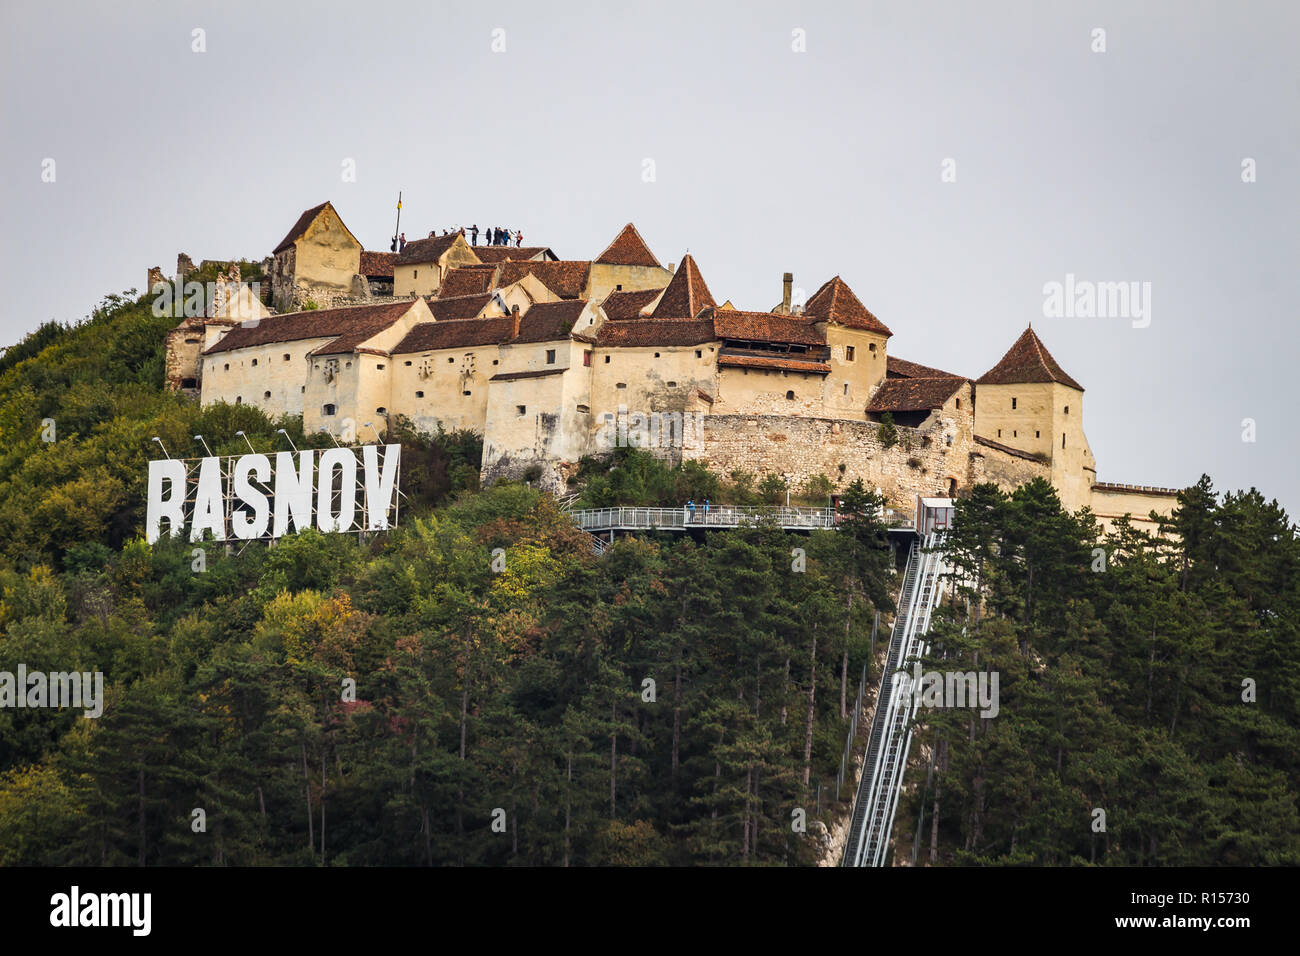 Brasov, Transylvania, Romania - September 26, 2018 - Medieval citadel in Rasnov city Stock Photo